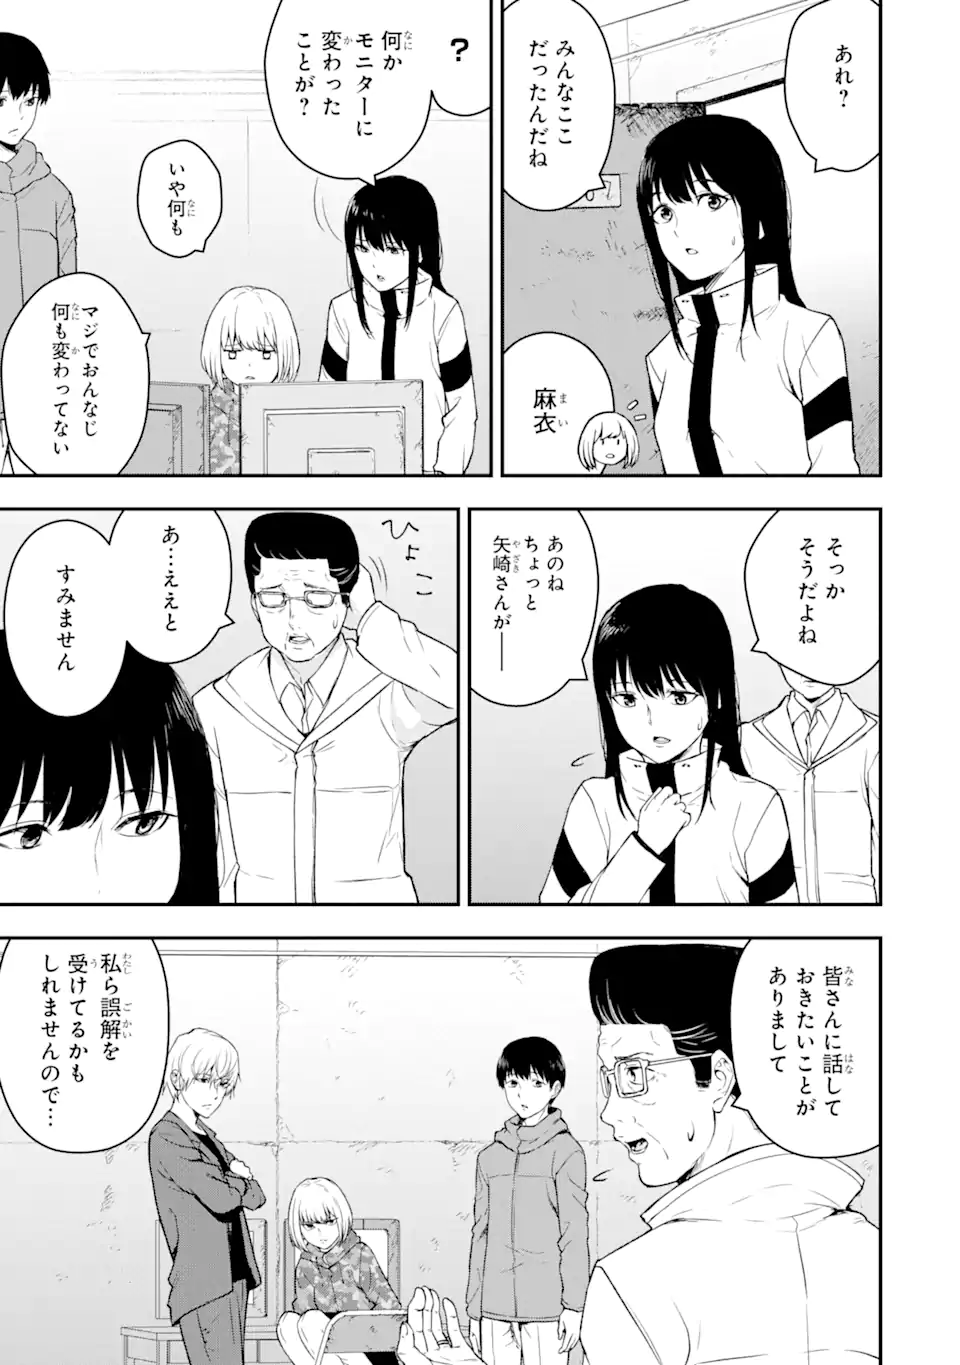 Hakobune – Shinubeki na no wa Dare ka? - Chapter 7.2 - Page 4